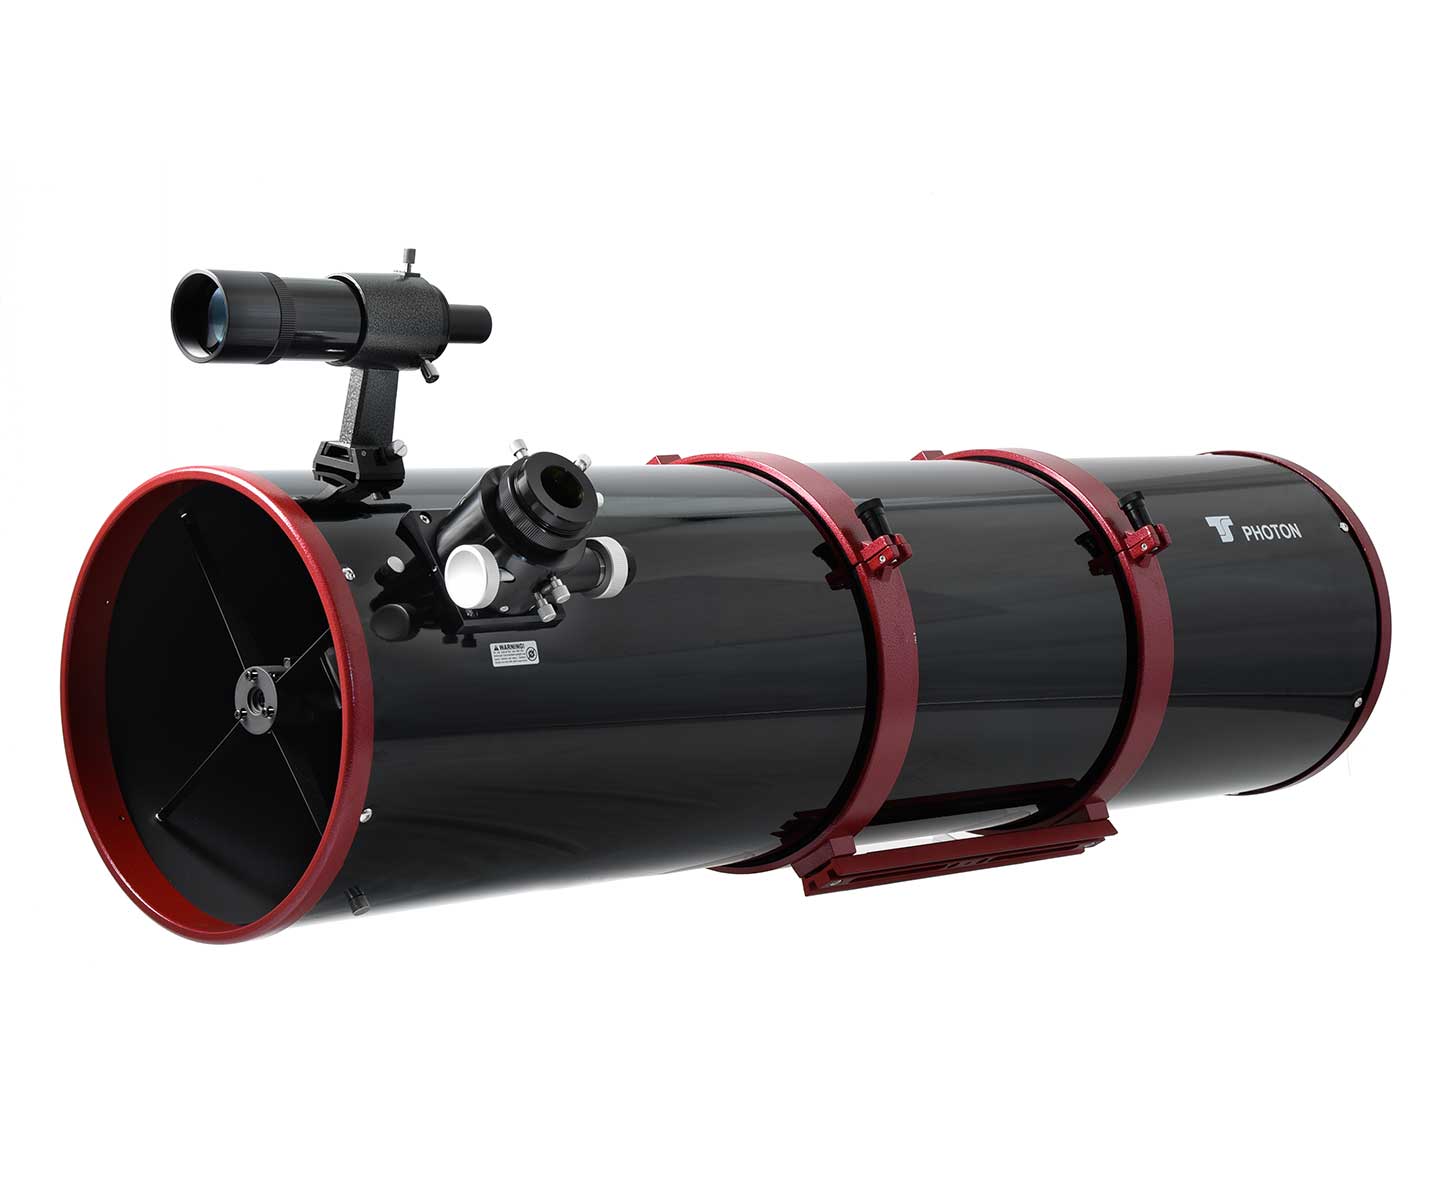   Tubo ottico GSO 254mm F5 Newton Ota con focheggiatore Crayford da 50.8mm   